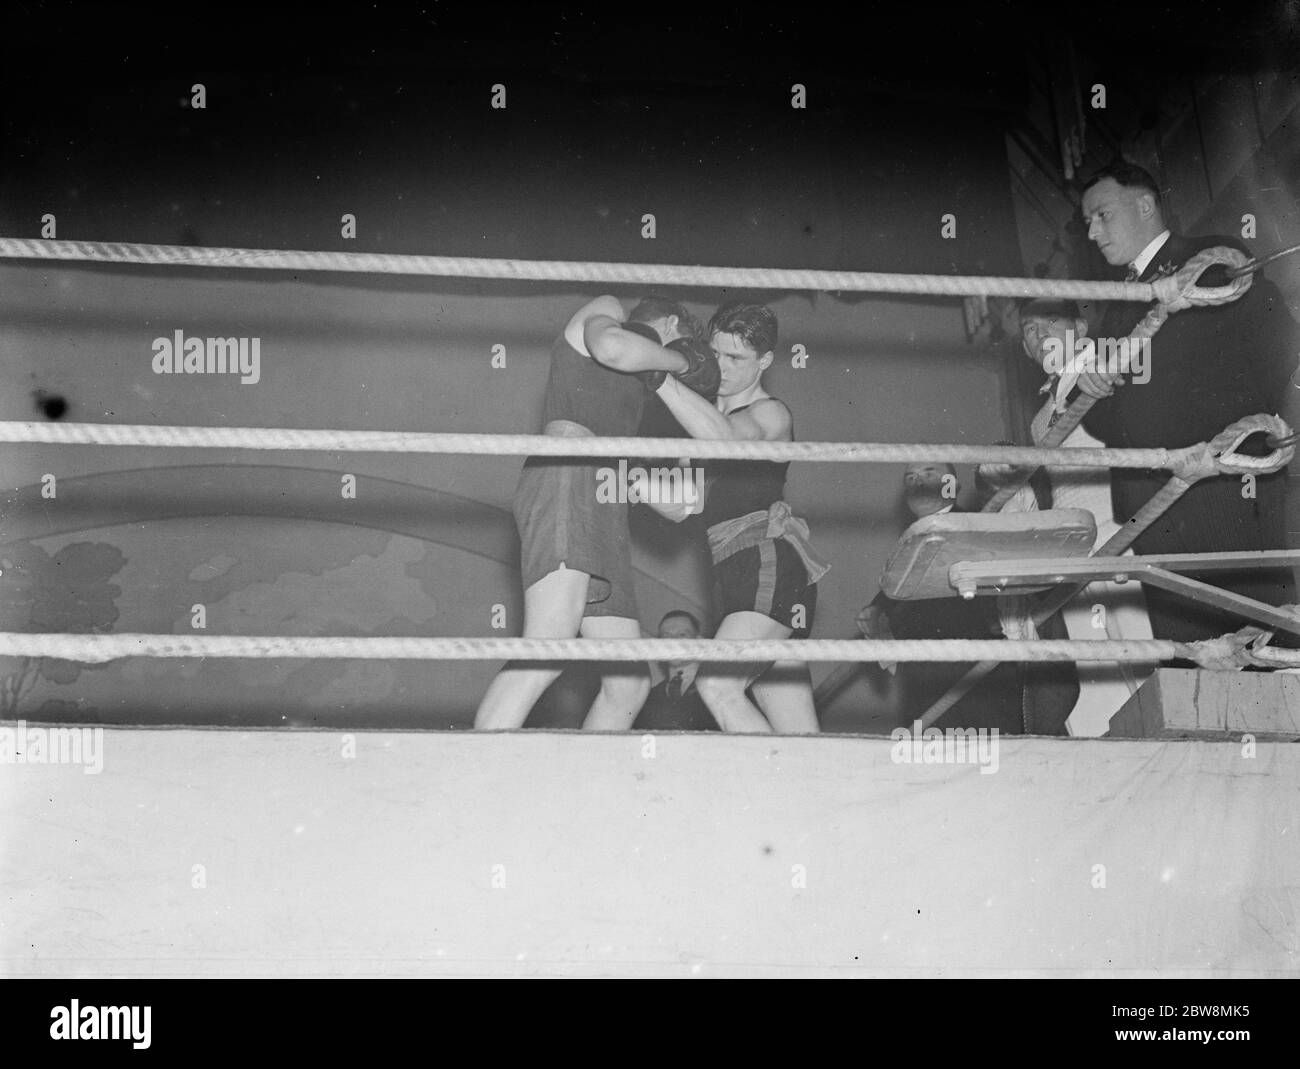 Boxclub Wettbewerb zwischen Eltham Boxclub und Battersea Boxclub. Blake und Williams konkurrieren im Ring. 1936 Stockfoto